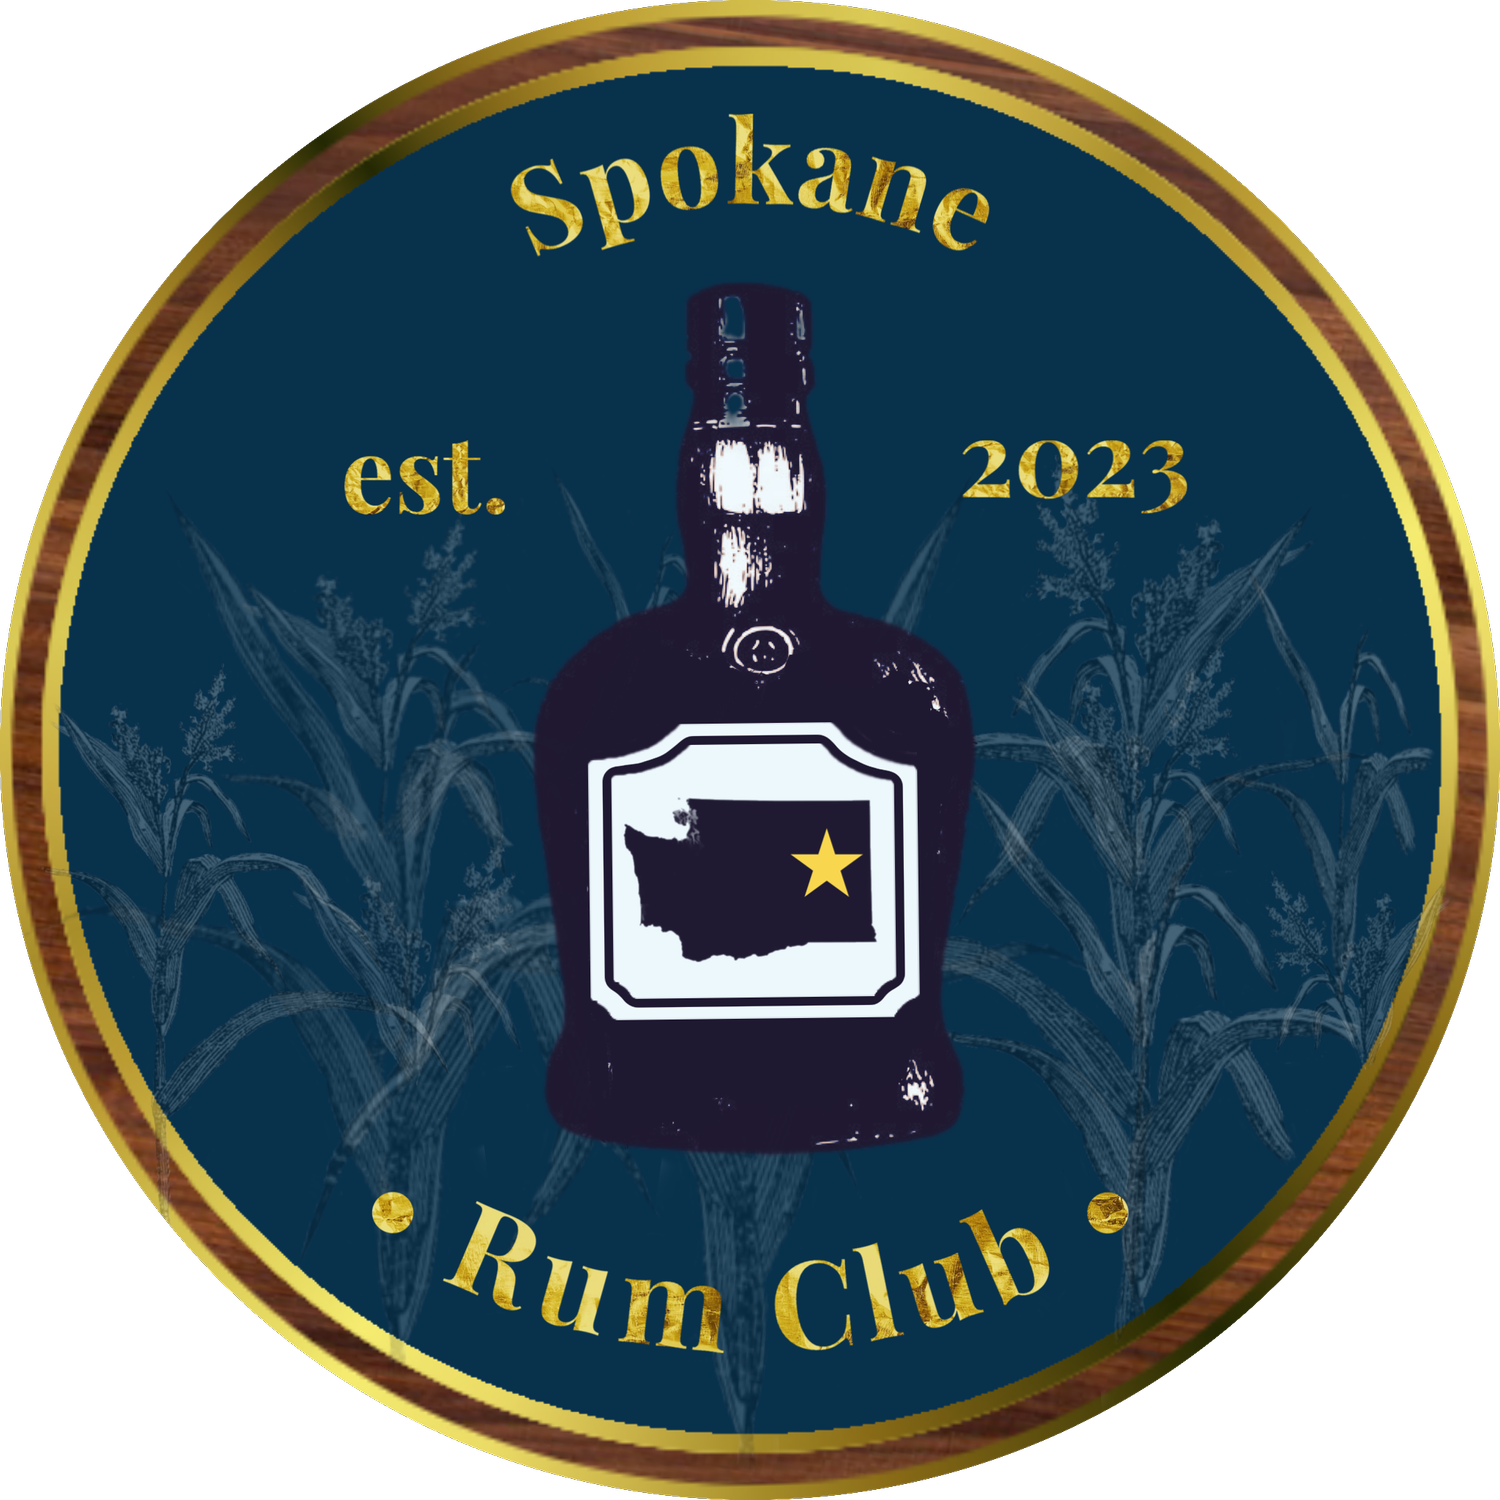 Spokane Rum Club